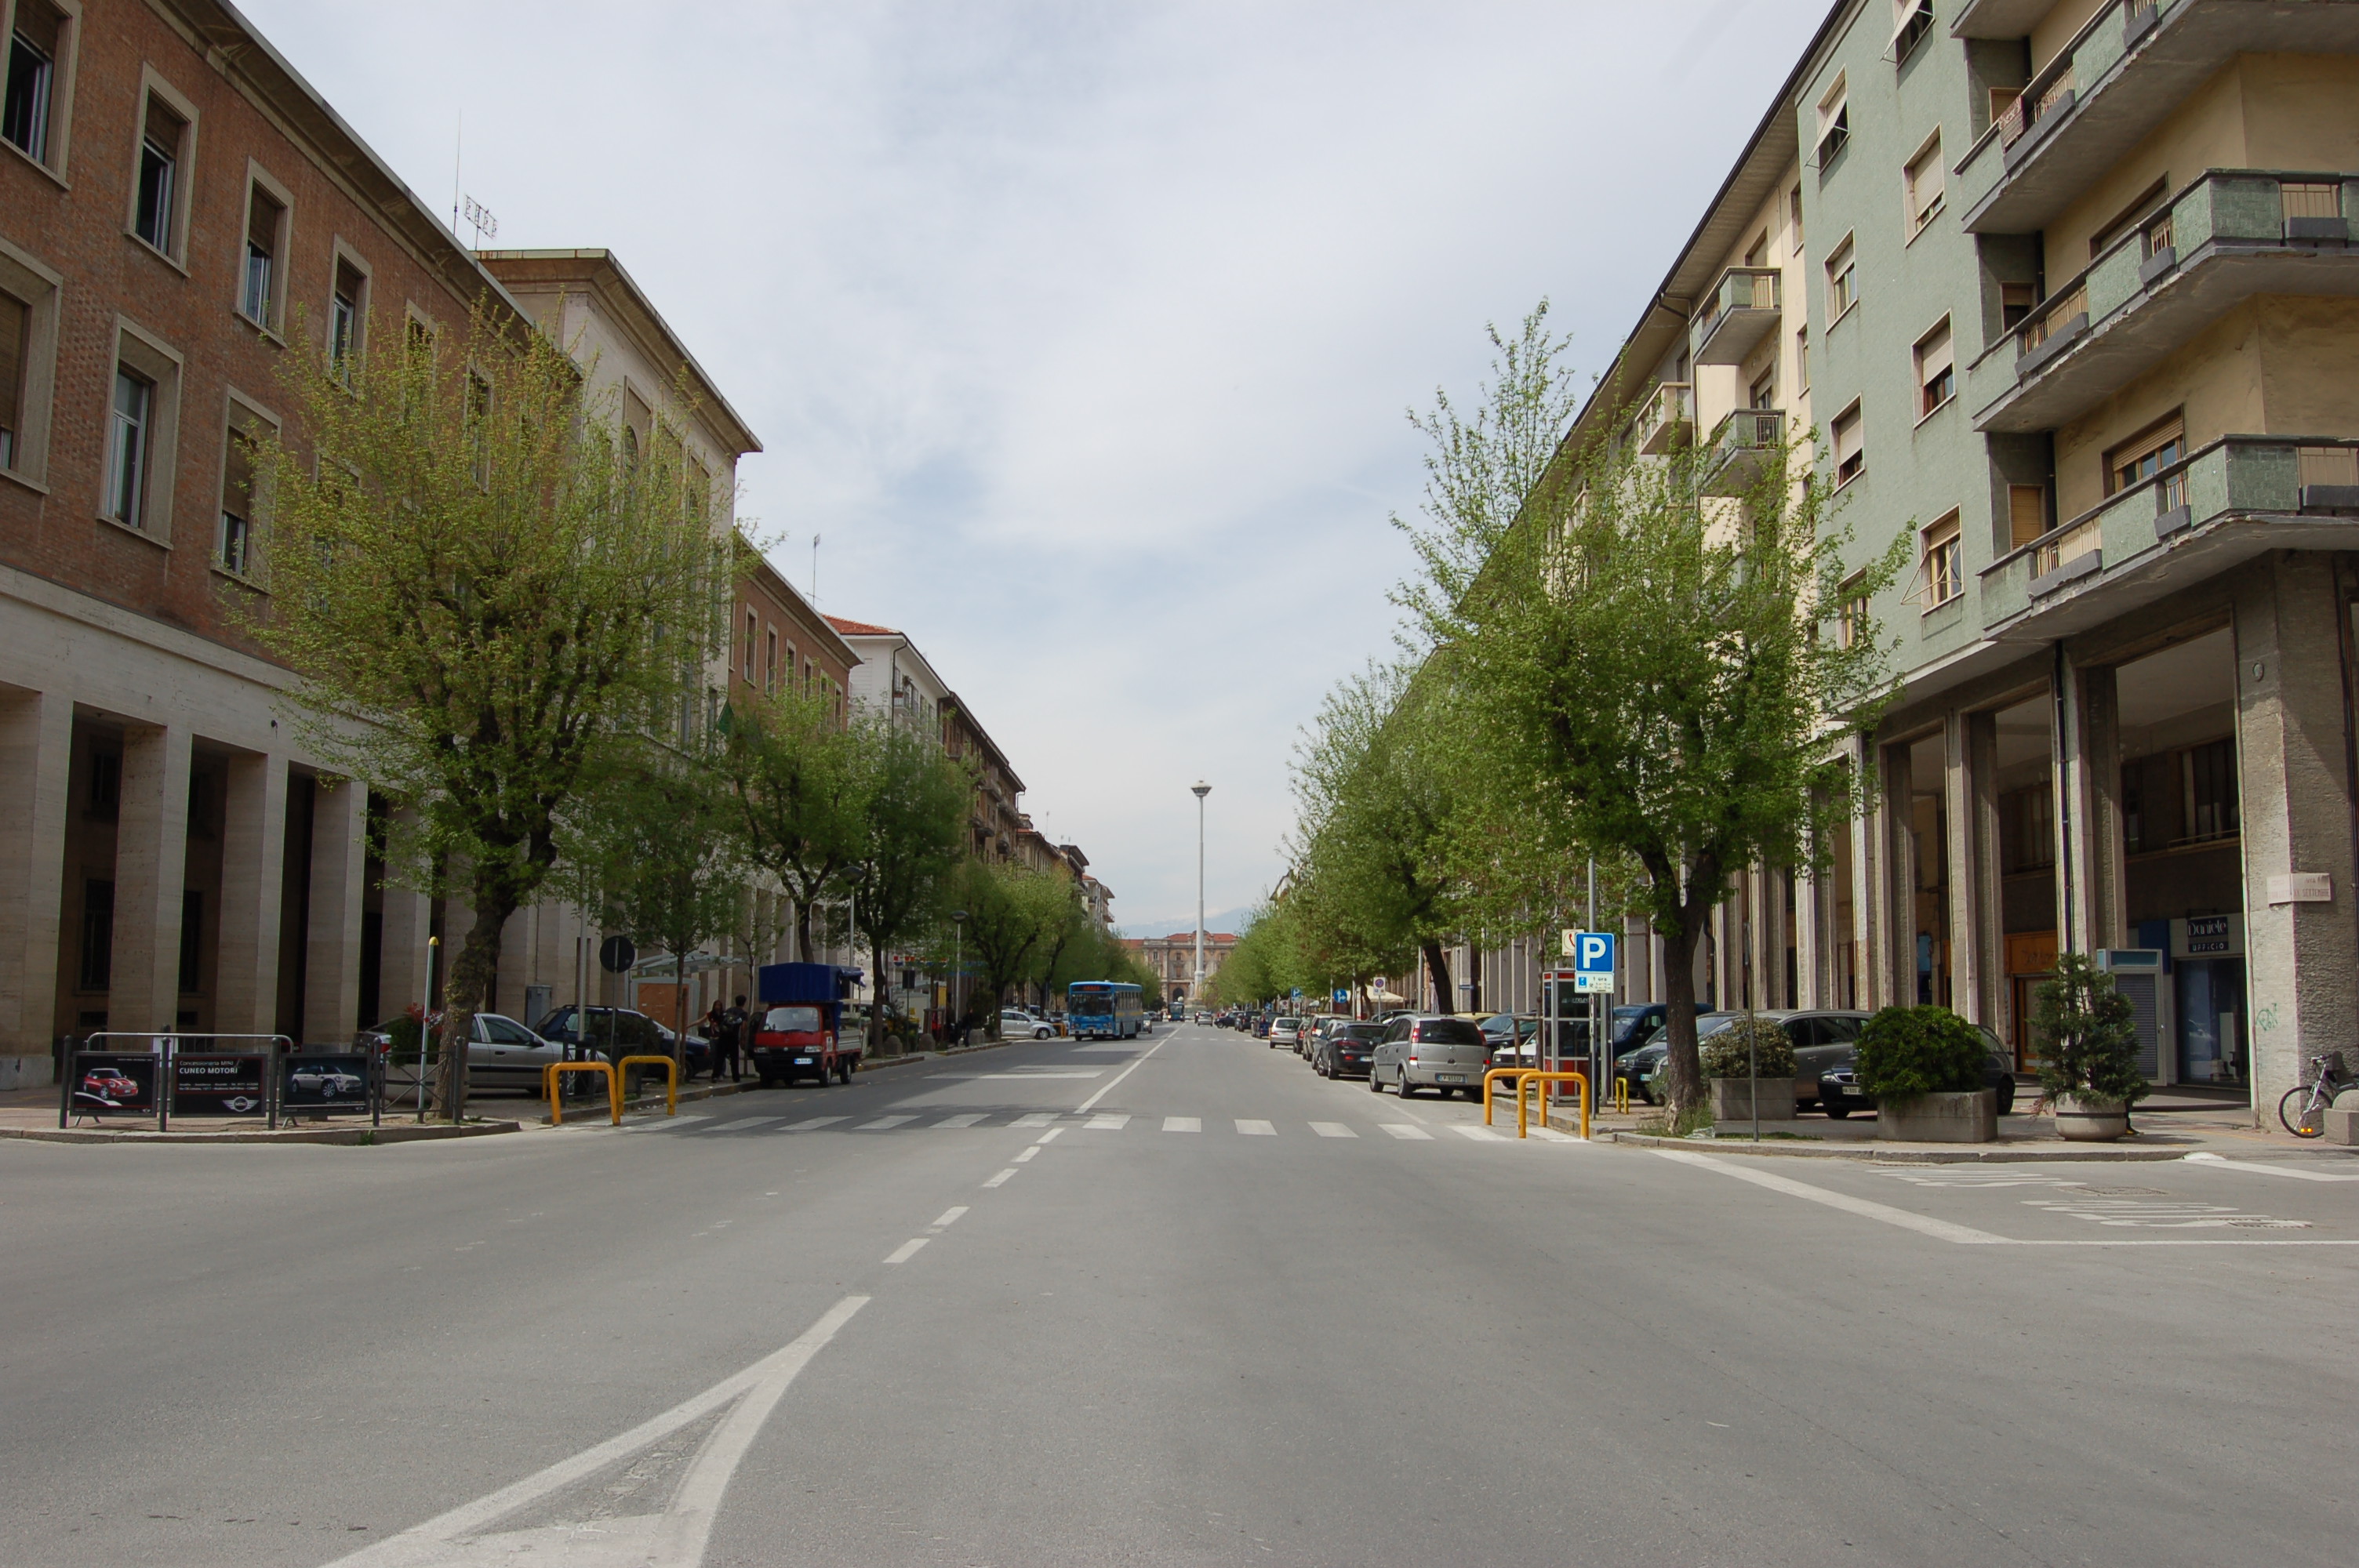 La Guida - Sport in strada per riqualificare il quartiere Cuneo Centro: in corso Giolitti